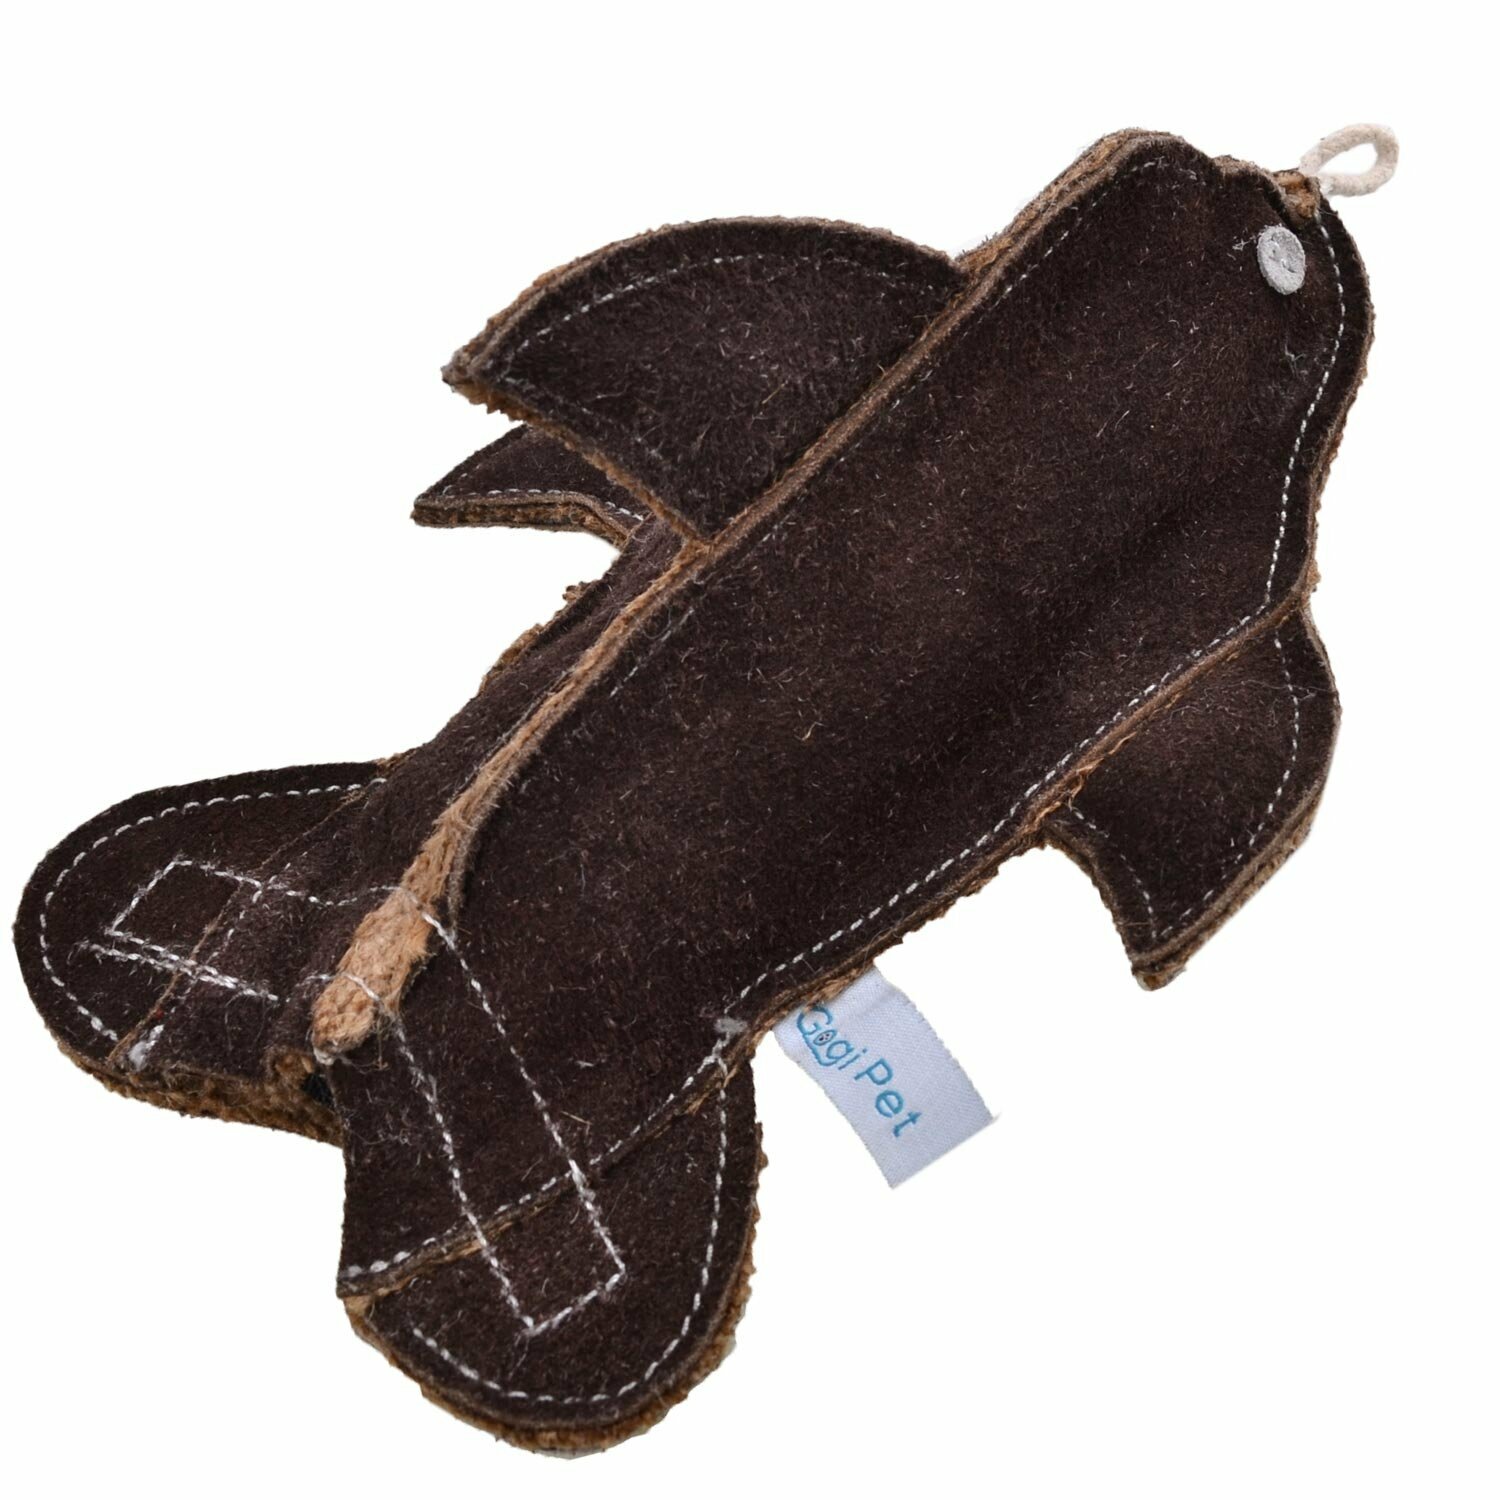 Brauner Delfin Hundespielzeug - GogiPet ® Hundespielzeug aus nachhaltigen Rohstoffen